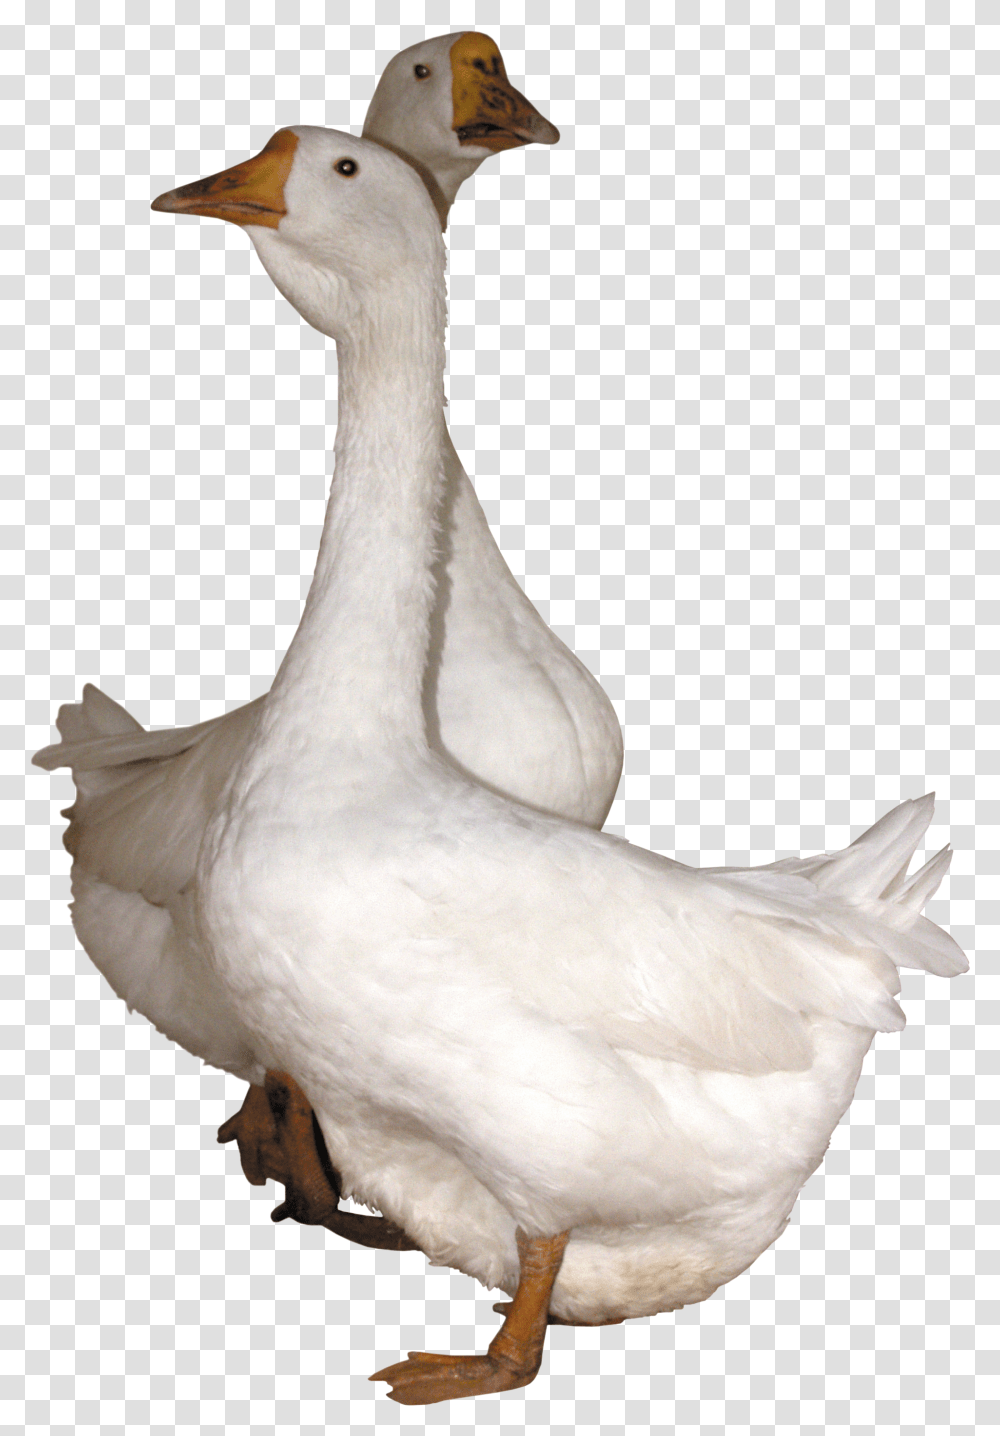 Duck, Animals, Goose, Bird, Chicken Transparent Png